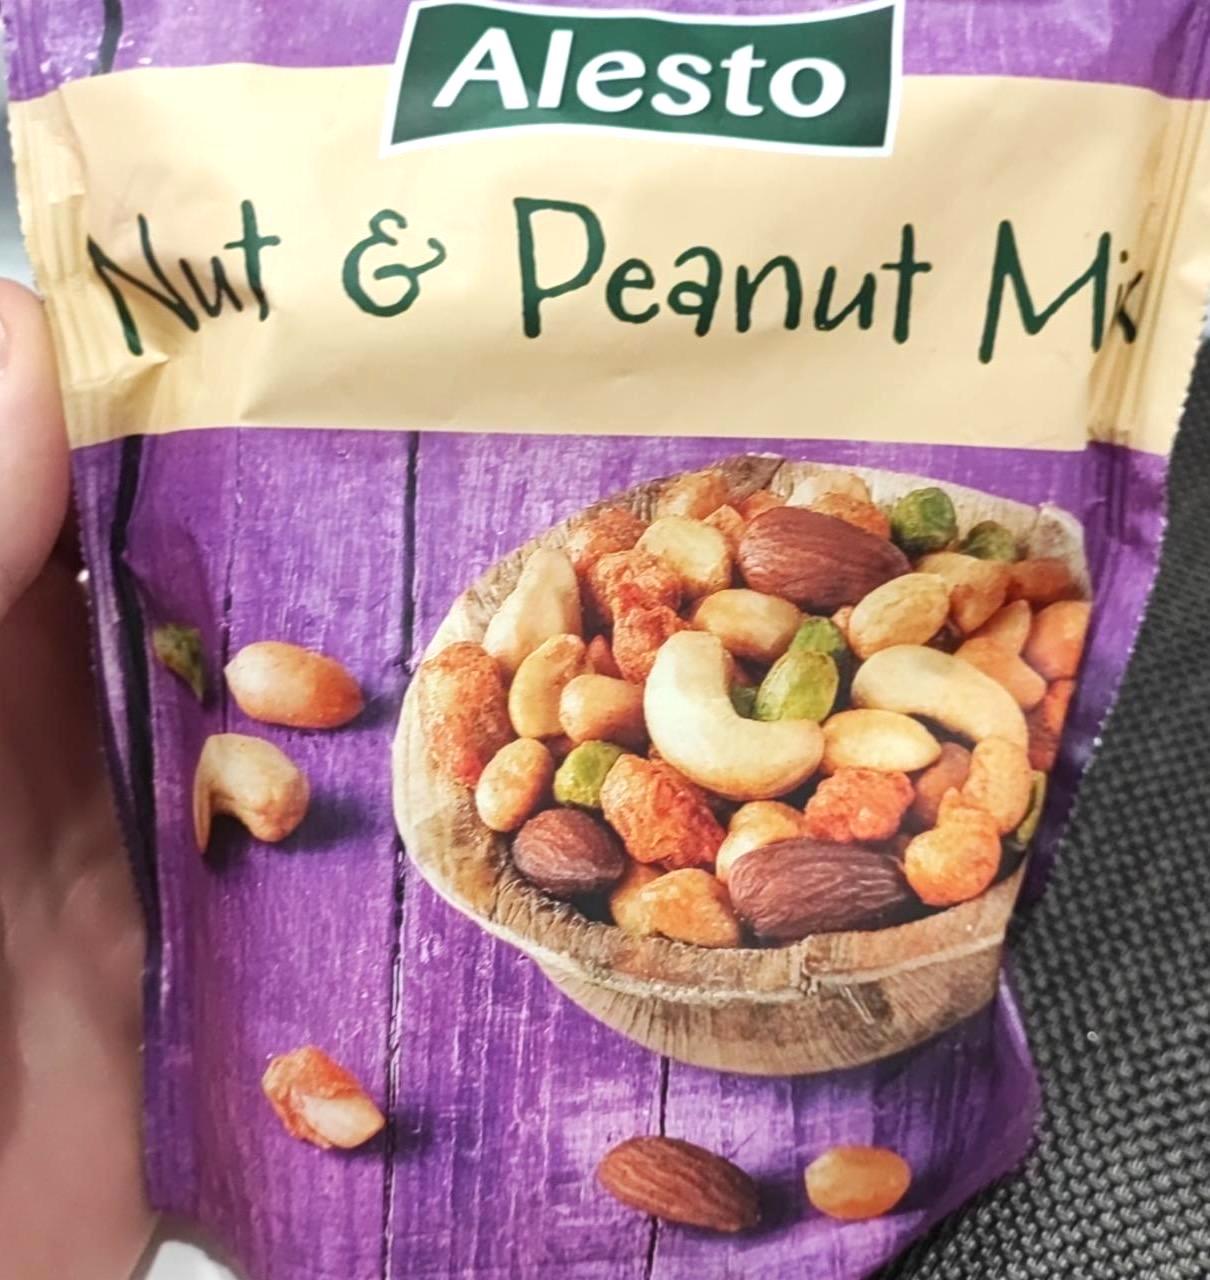 Képek - Nut & peanut mix Alesto